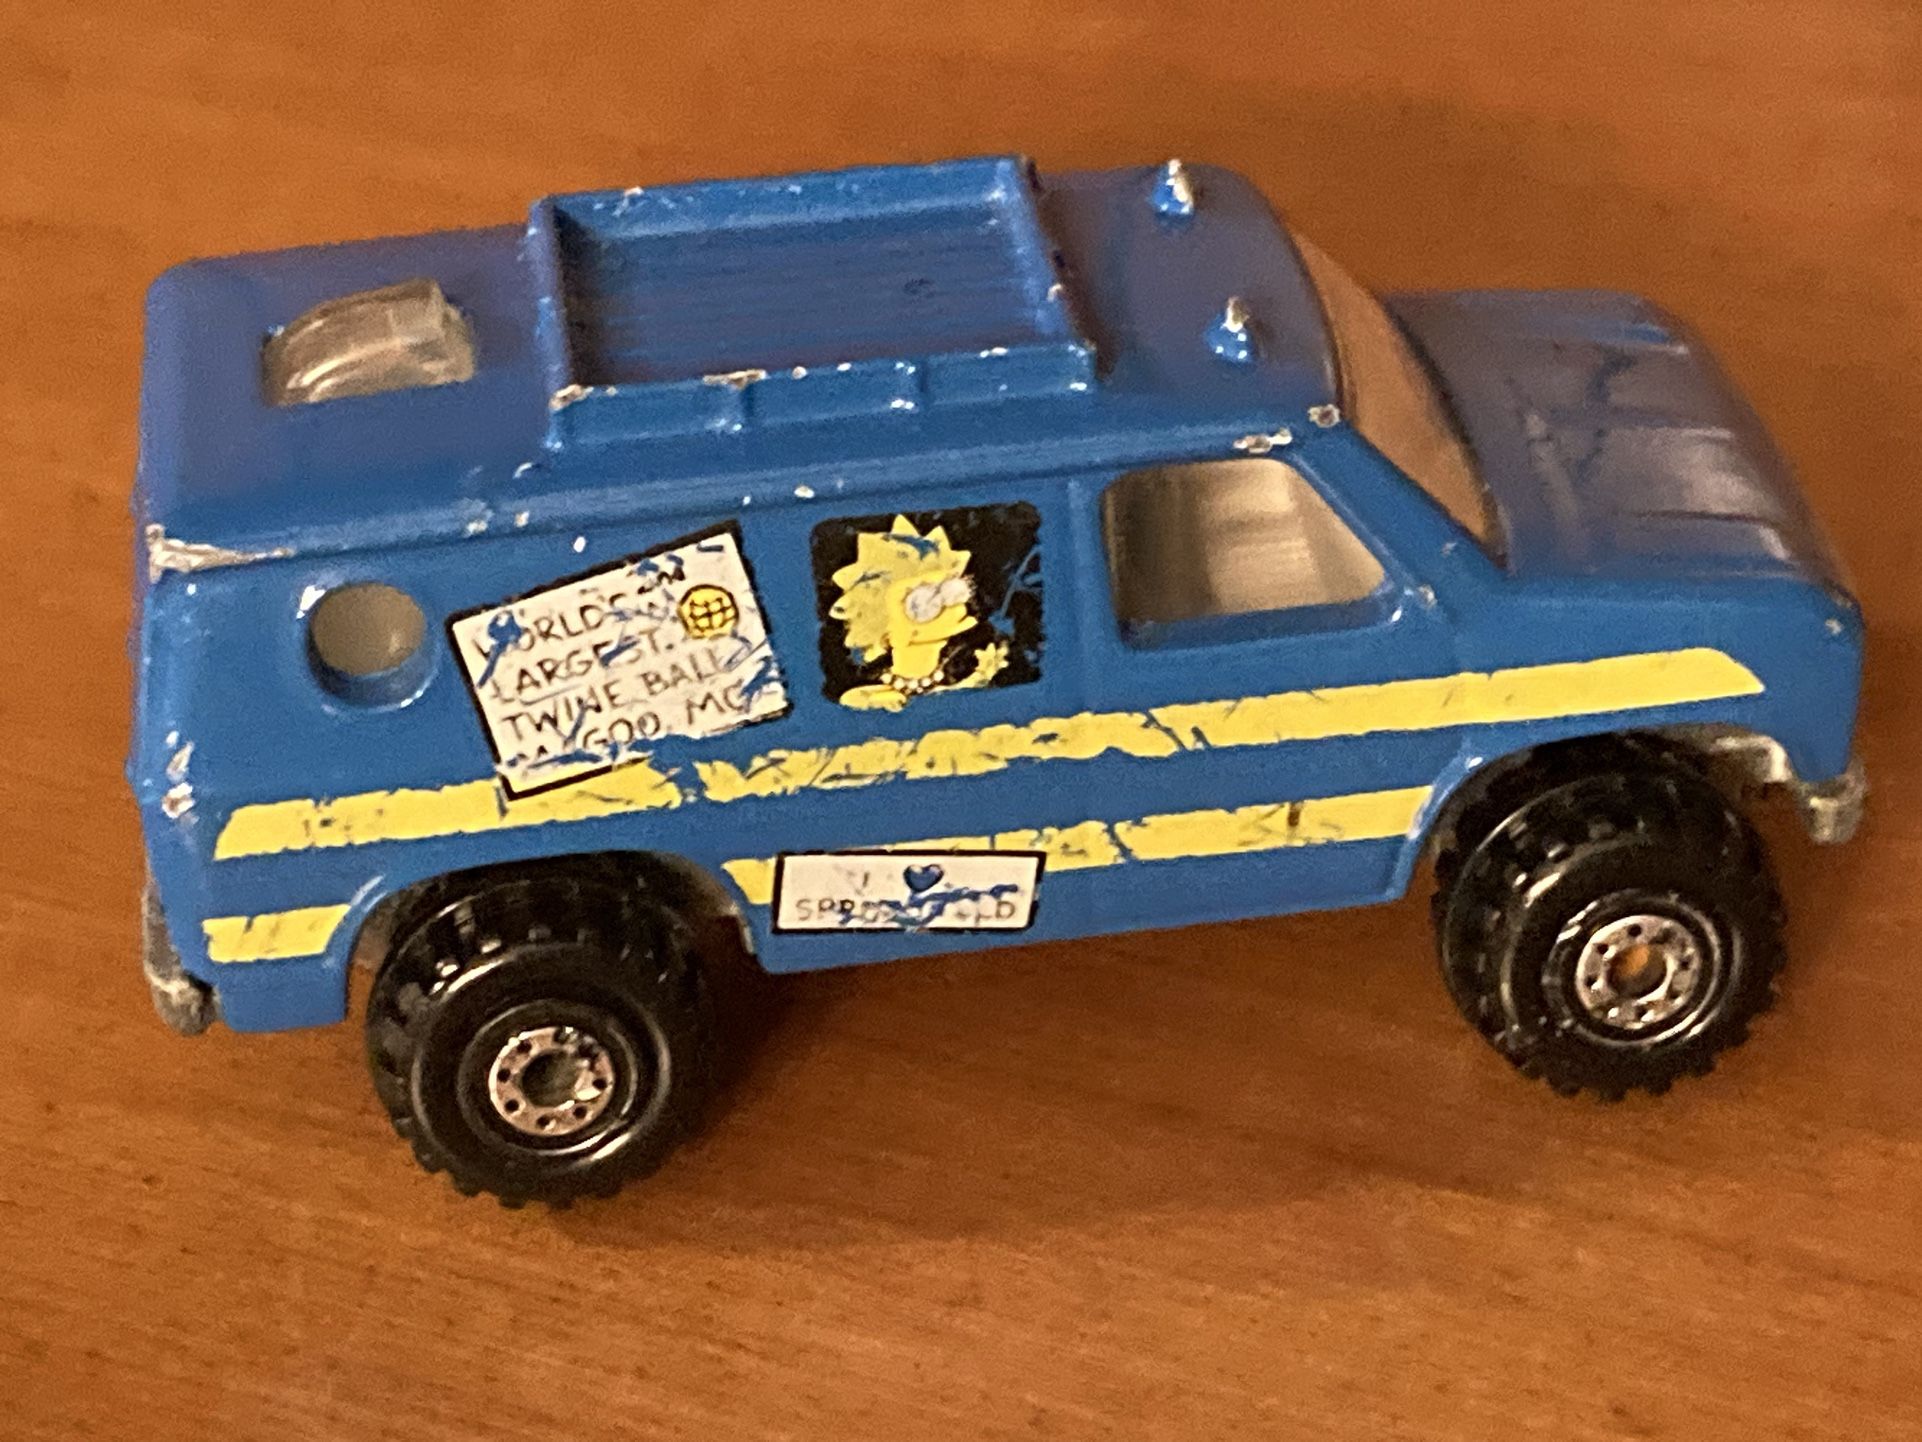 Vintage Hot Wheels The SIMPSONS Blue Bart & Lisa Metal Diecast Toy Van Car 4x4 Tires - See Pics!!